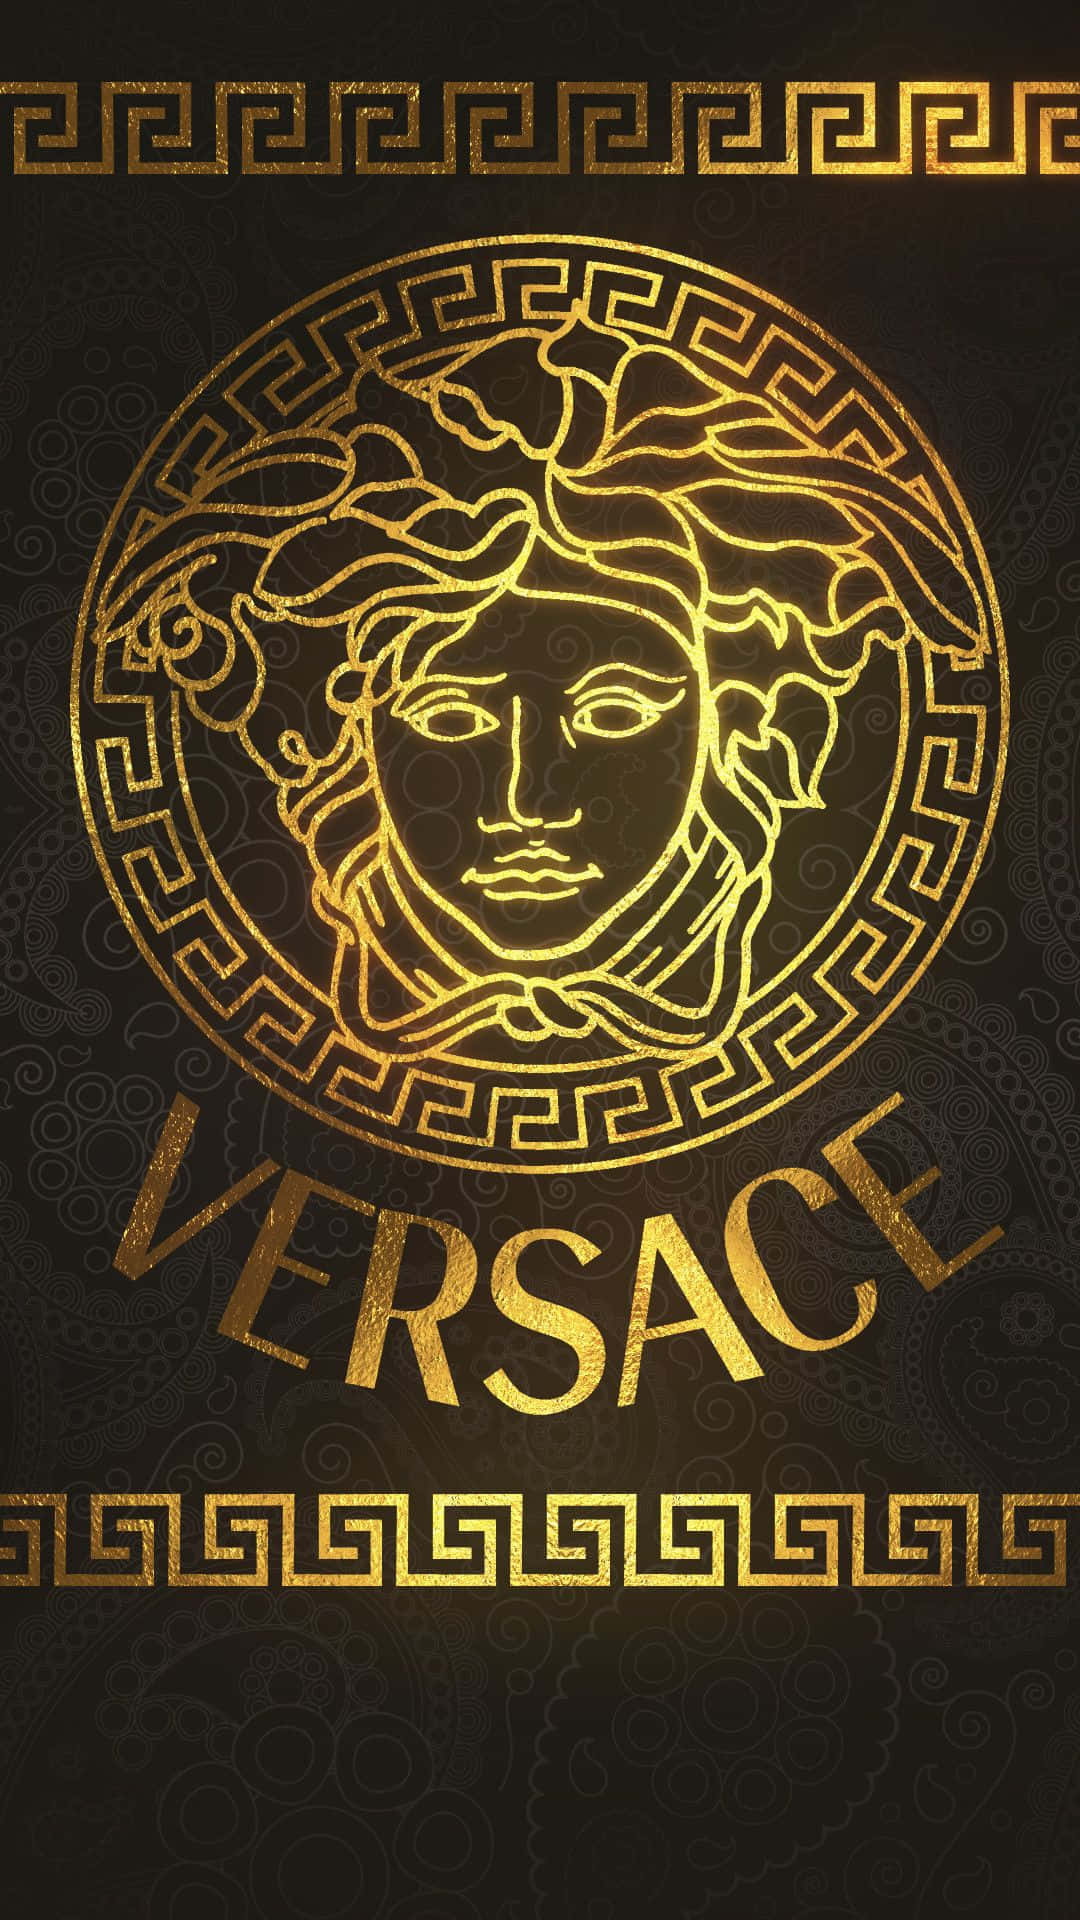 Versacehintergrundbilder - Versace Hintergrundbilder Wallpaper